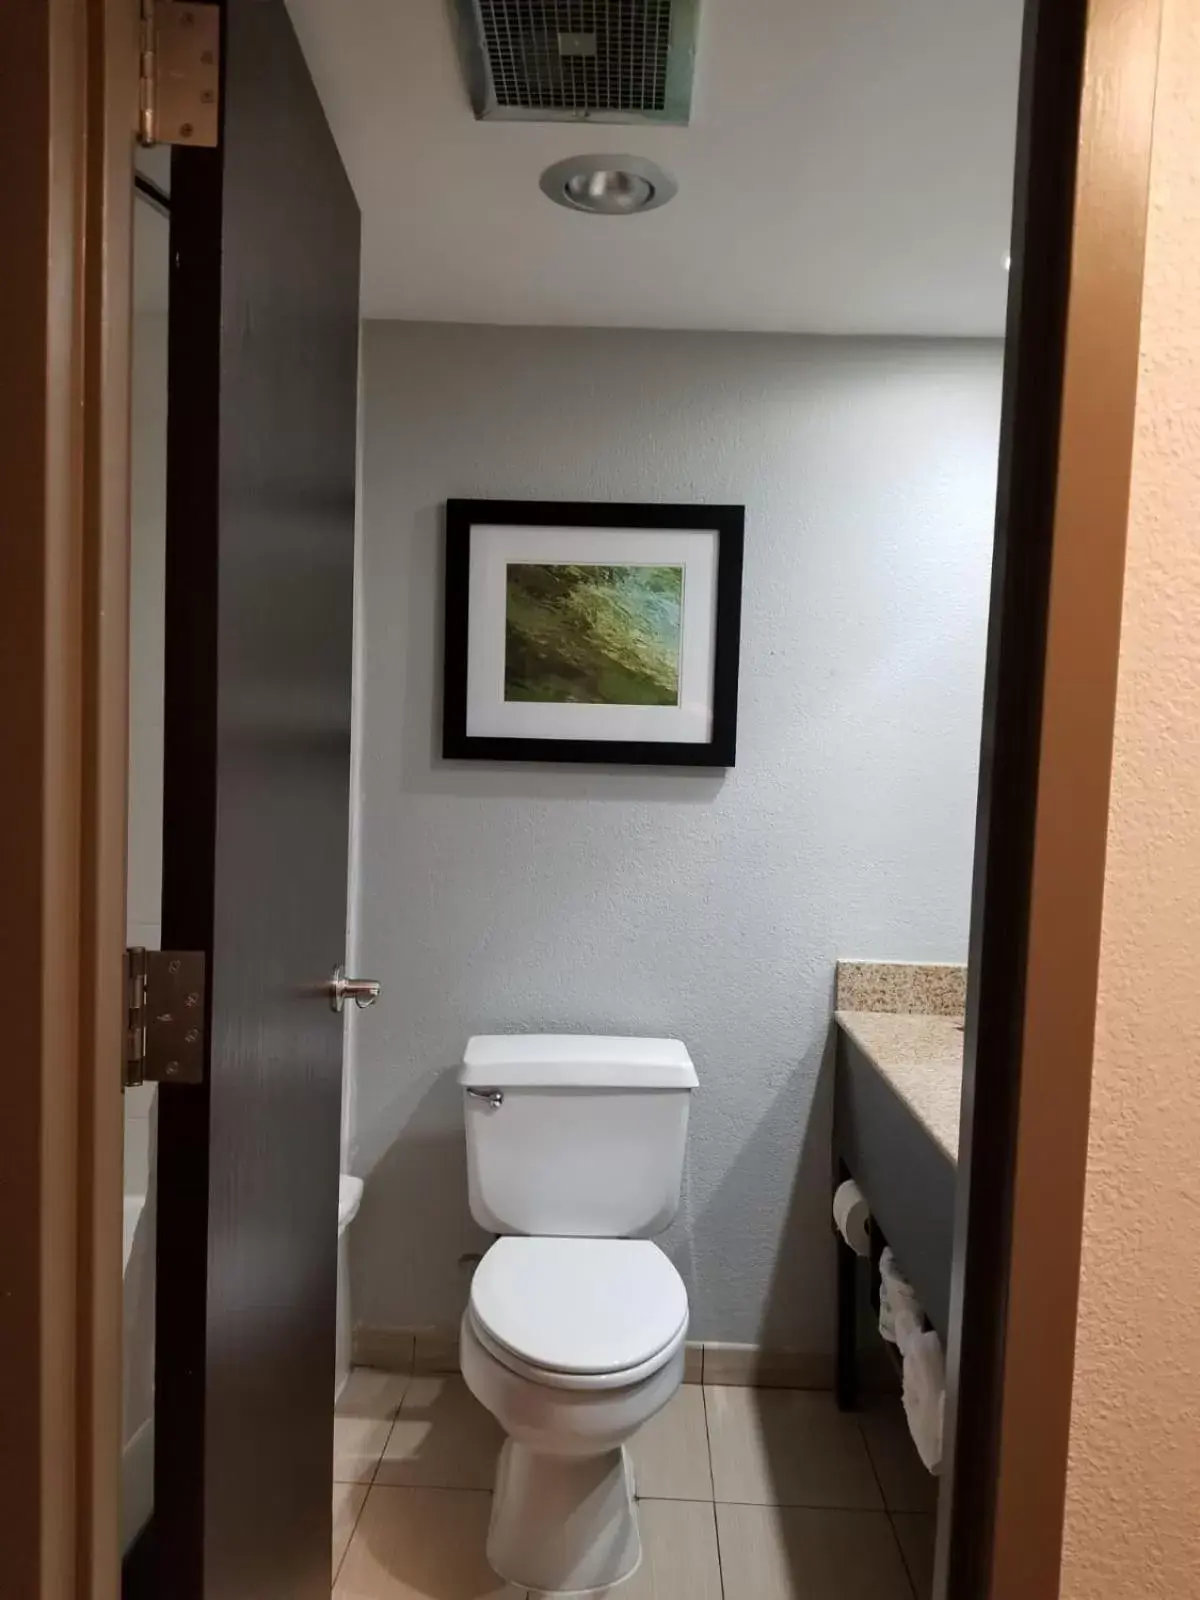 Bathroom in Wyndham Garden Hotel - Jacksonville